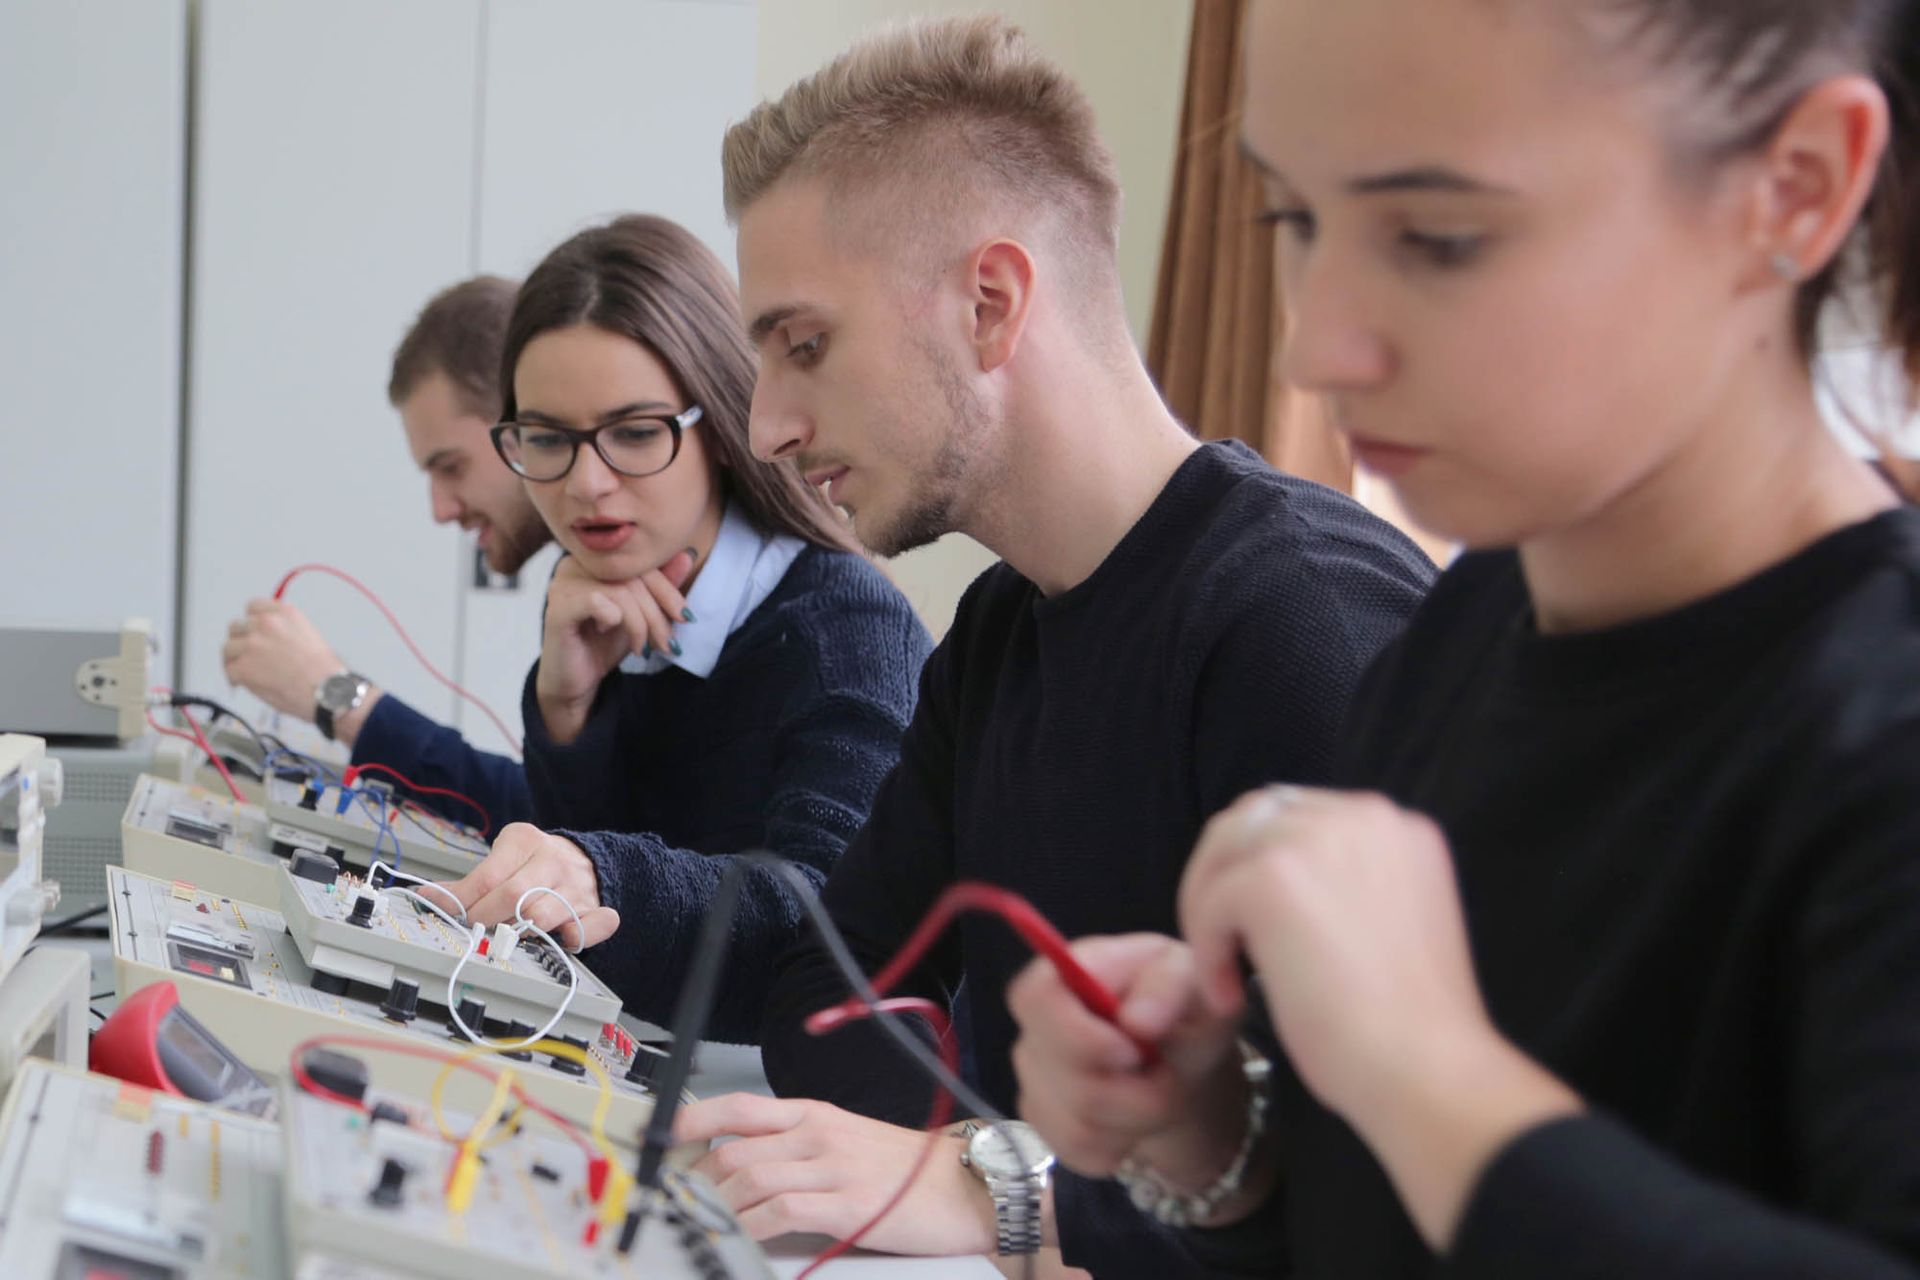 Eine Gruppe von Menschen arbeitet in einem Labor an Elektronik.